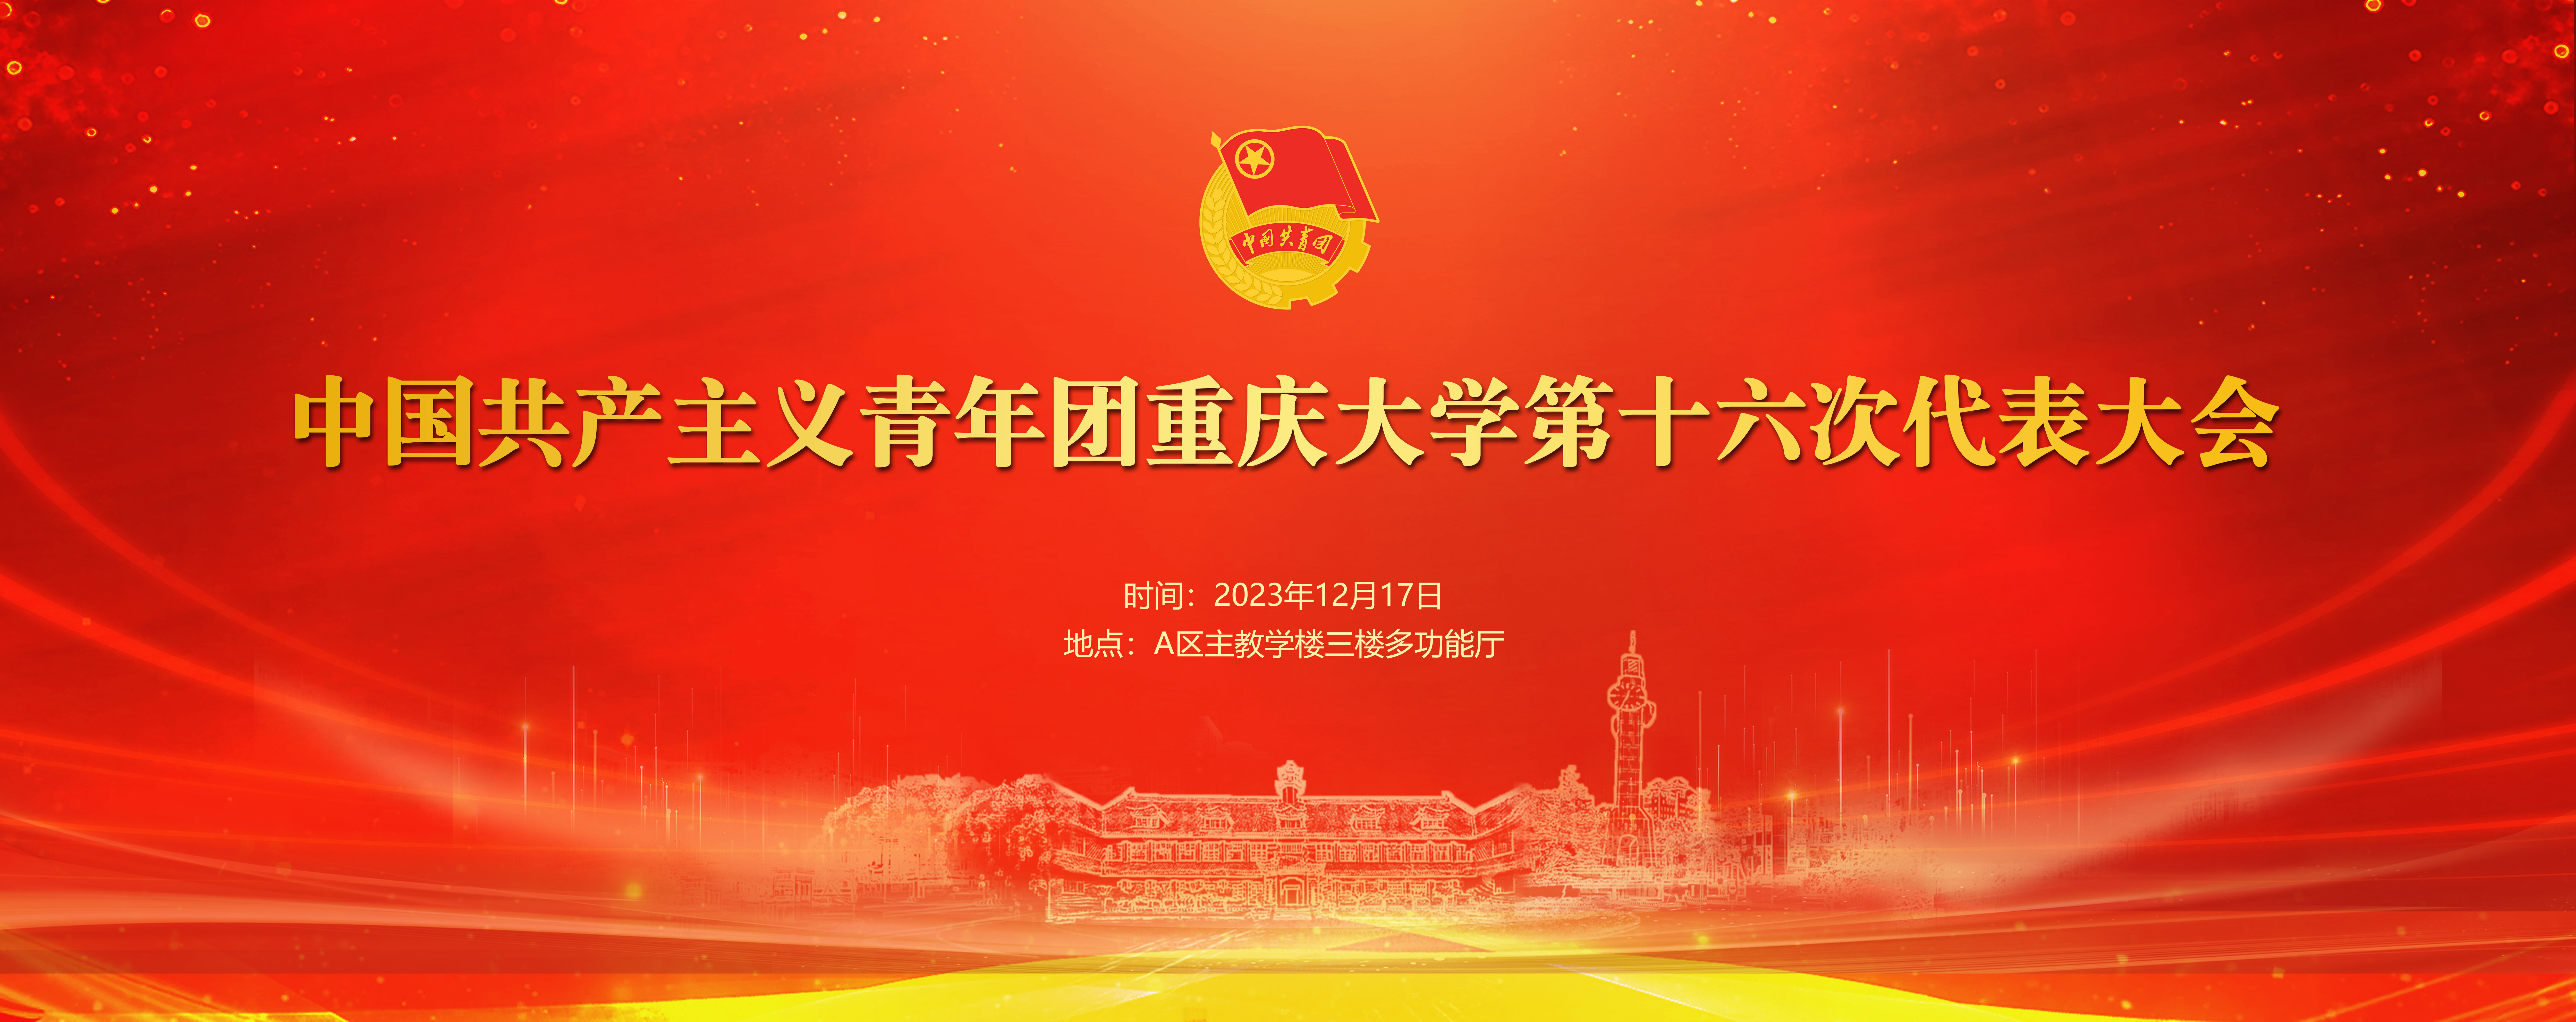 重庆大学第五届“红船杯”研究生学习新思想知识竞赛